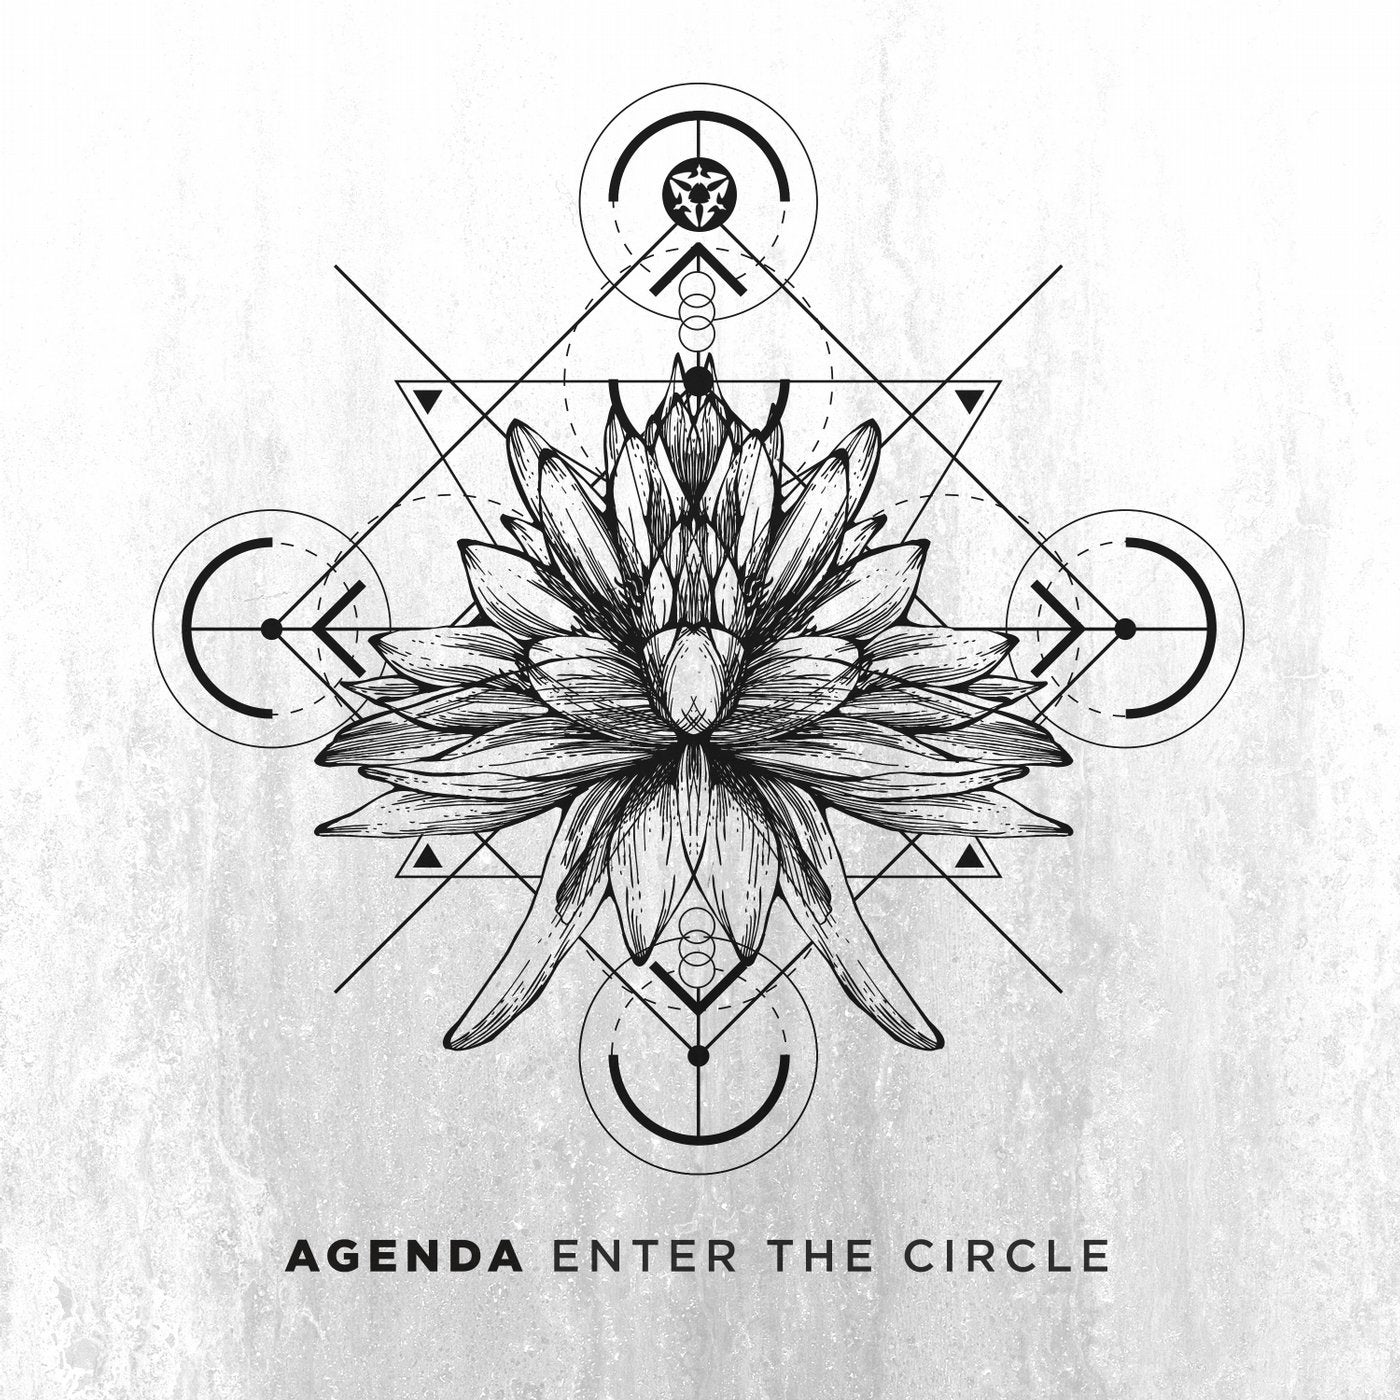 Enter the Circle